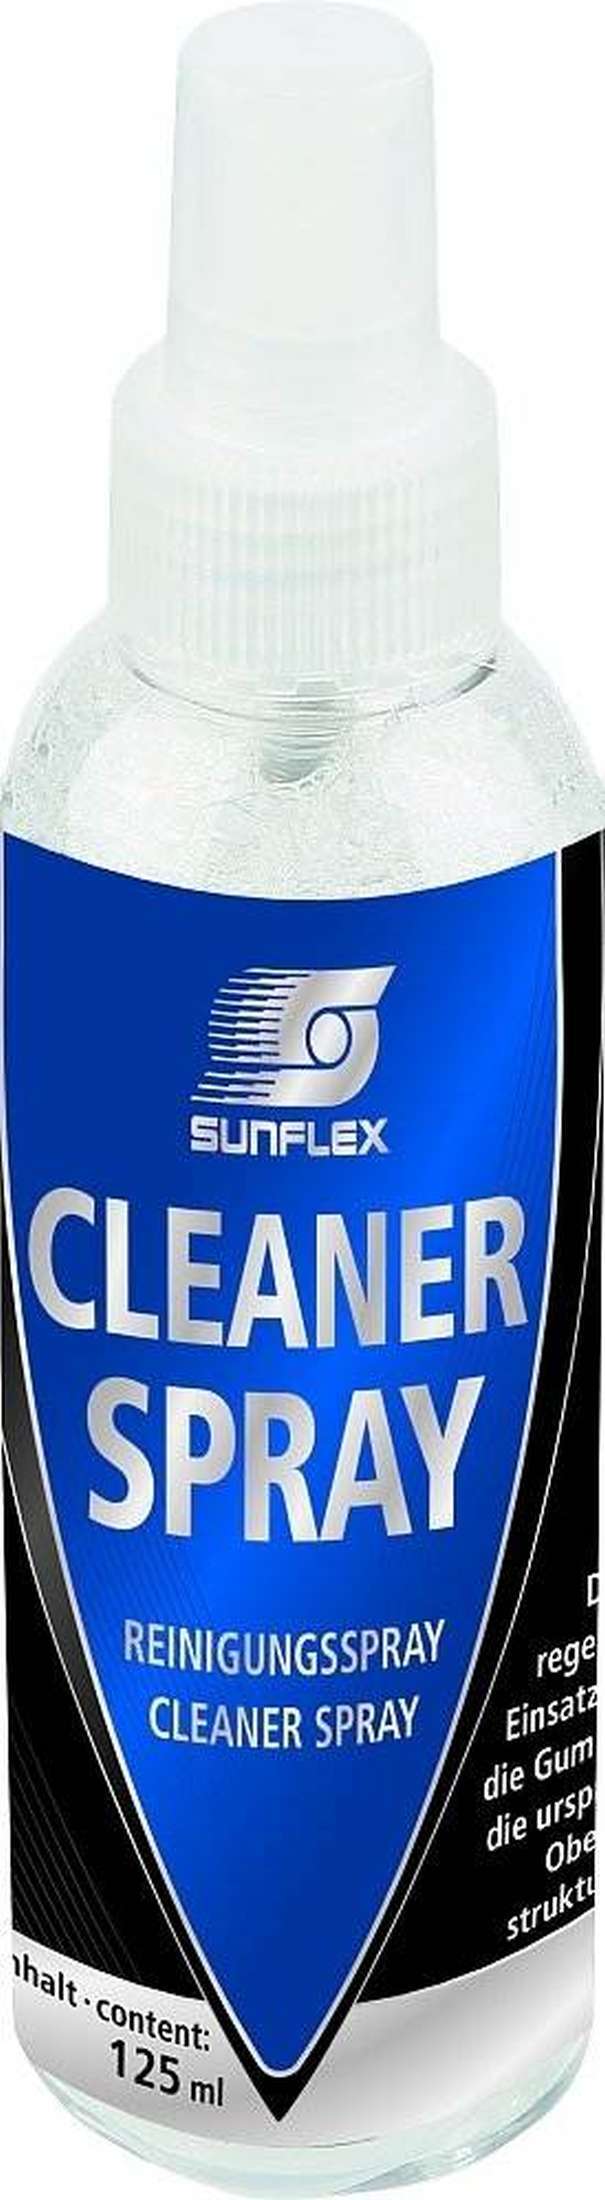 Tischtennis Schläger Cleaner Spray-1